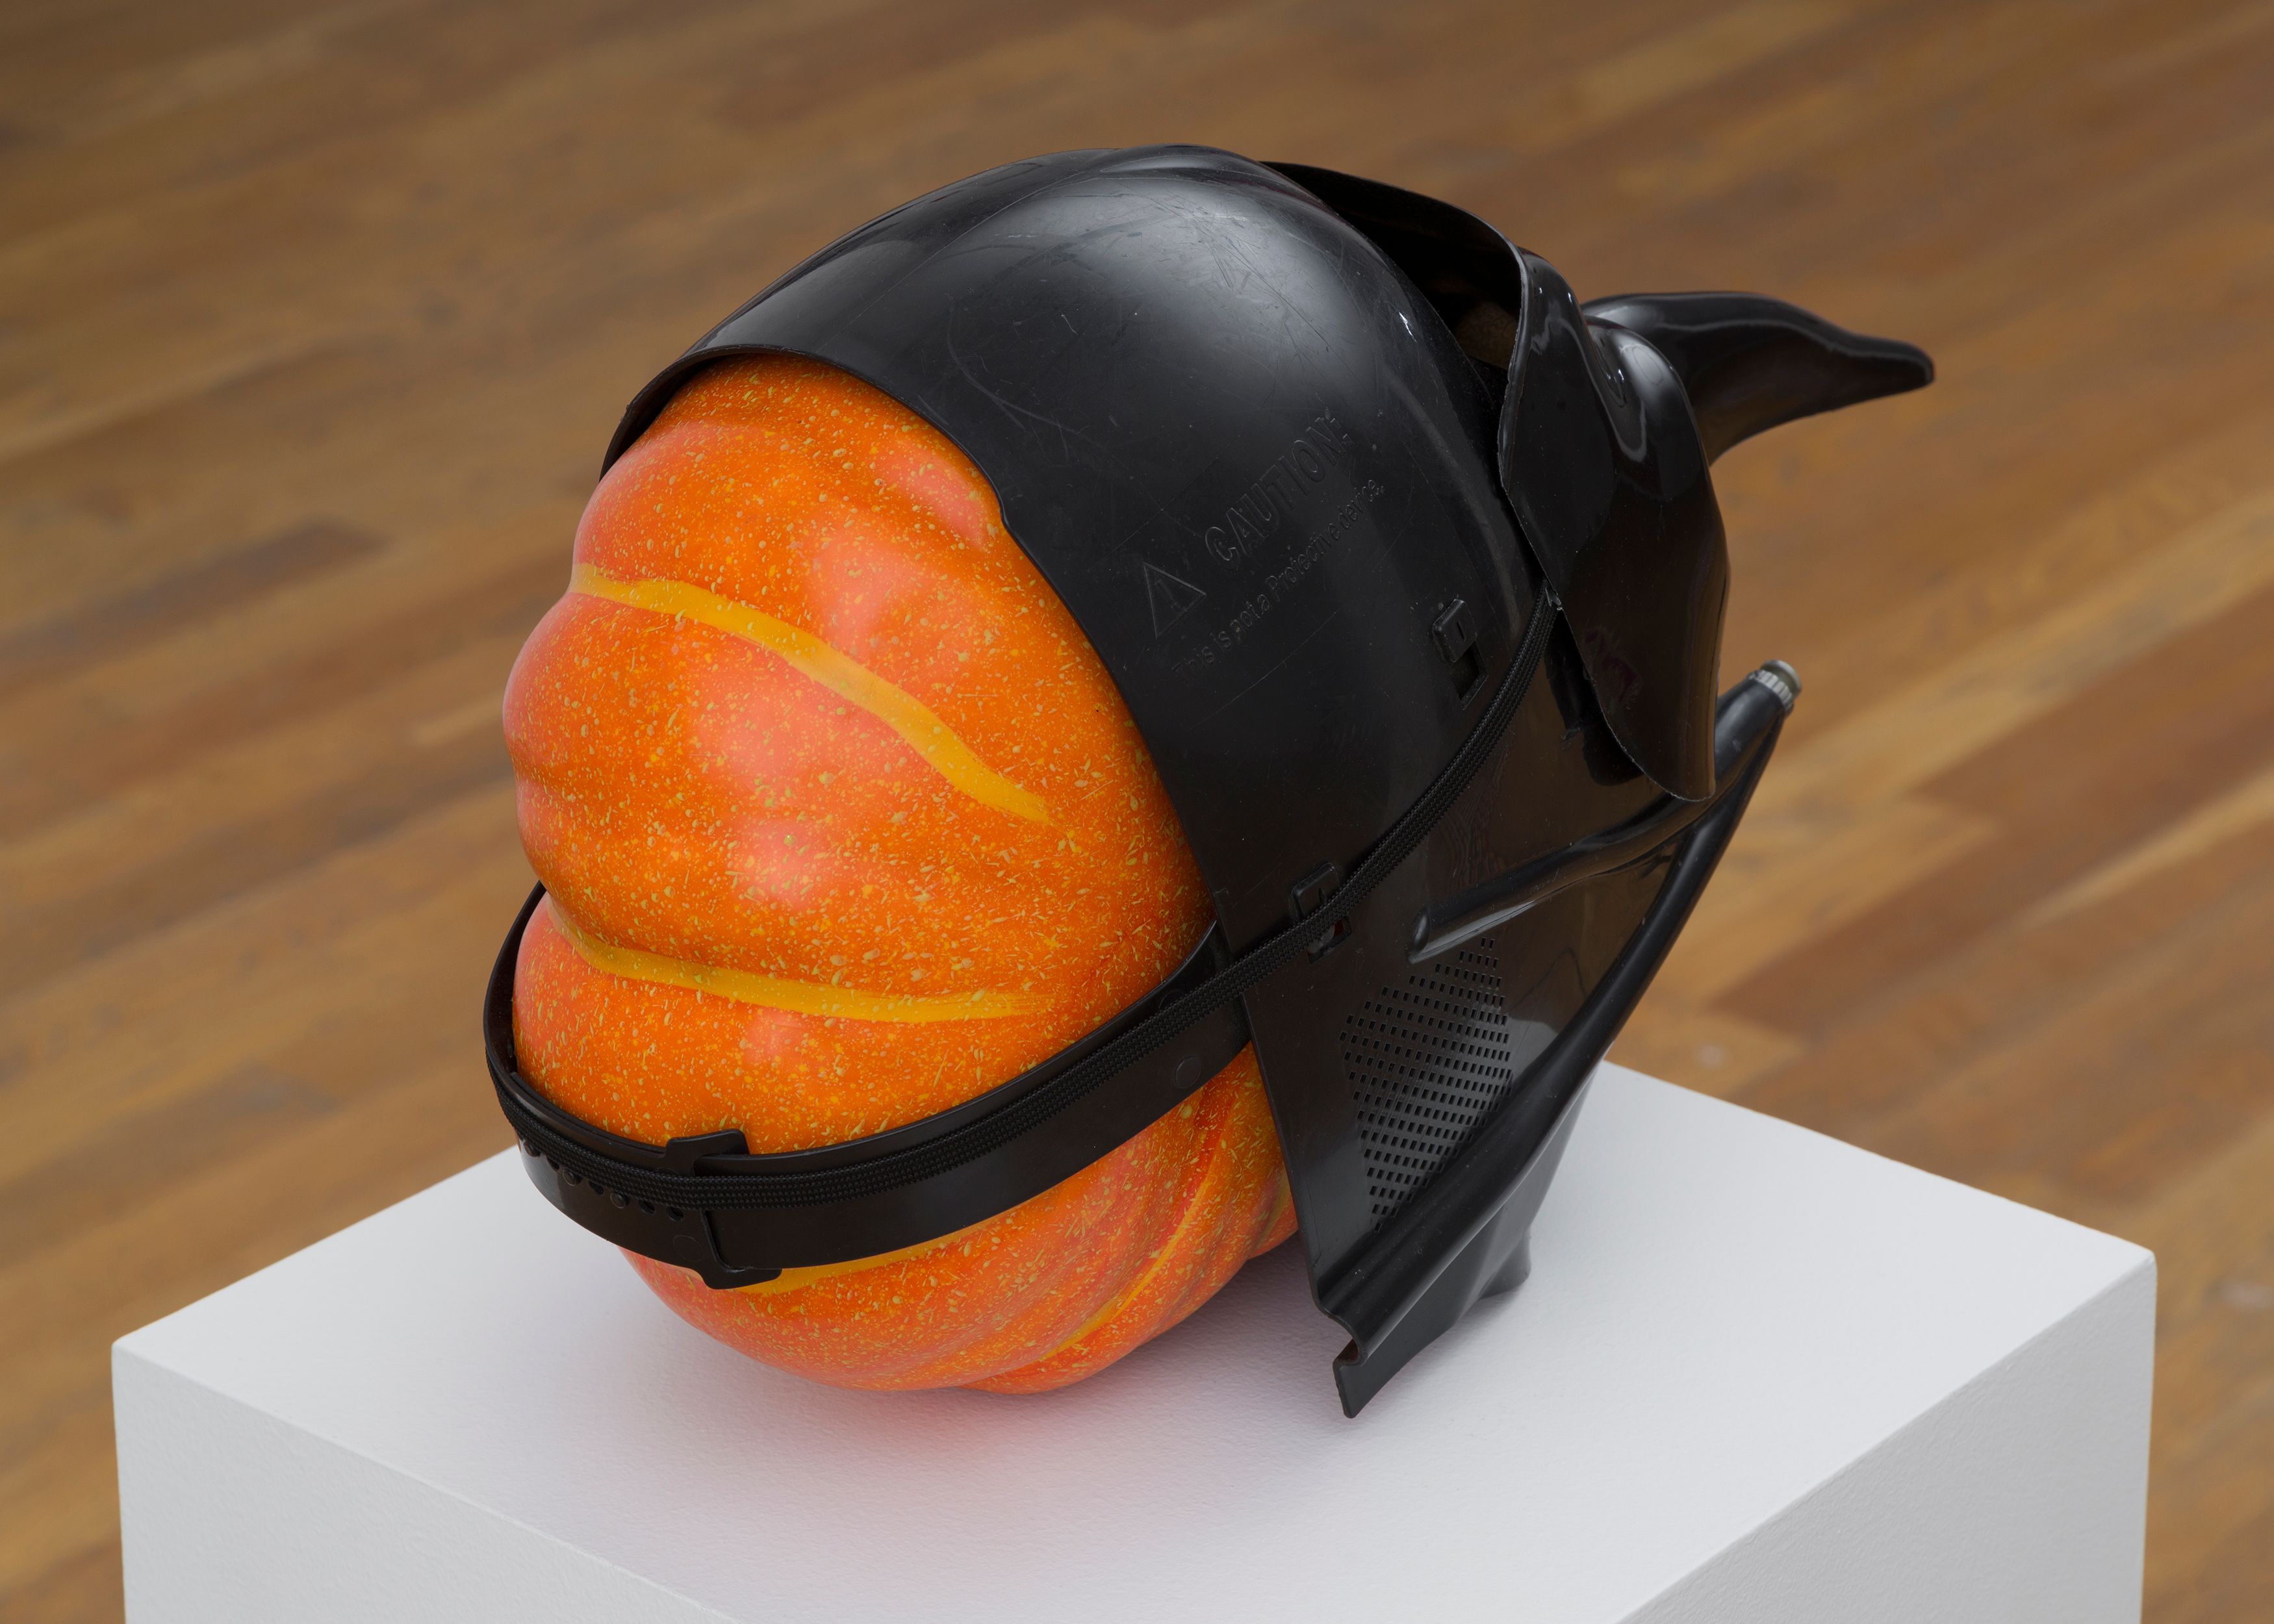 Danny McDonald Pumpkin in a Mask in a Mask, 2017, detail of foam, pumpkin, plastic masks, pedestal, 19 x 8 x 10 in. (48.3 x 20.3 x 25.4 cm), pedestal dimensions: 12 x 12 x 41 in. (30.5 x 30.5 x 104.1 cm) 